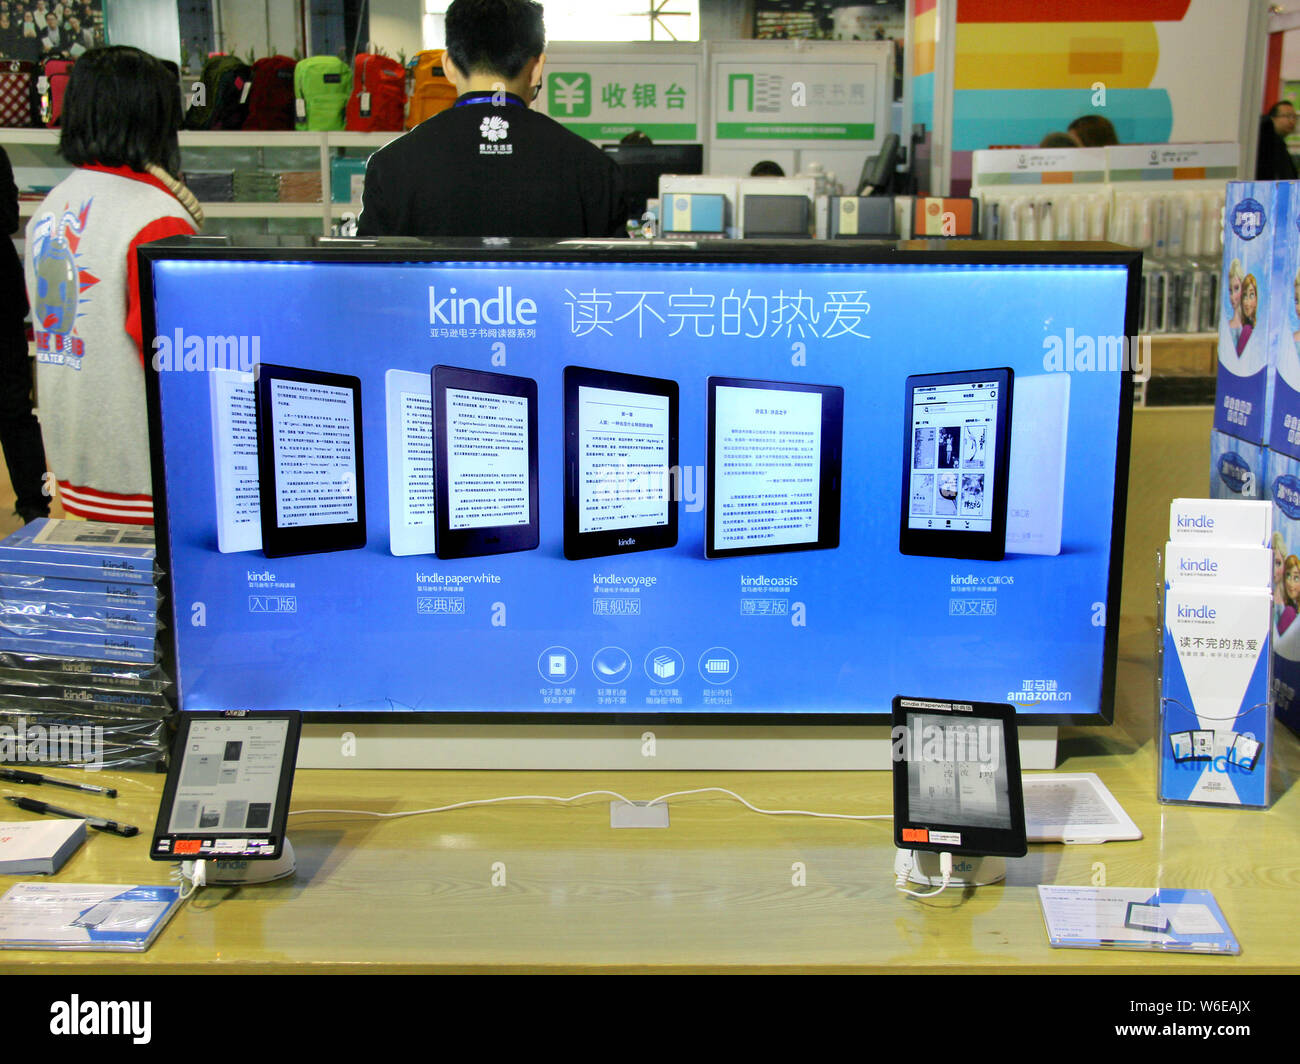 Tabletas Kindle del gigante americano de comercio electrónico Amazon están en exhibición durante la Feria del Libro 2018 Nanjing en Nanjing, ciudad del este de China de la provincia de Jiangsu, 22 Foto de stock